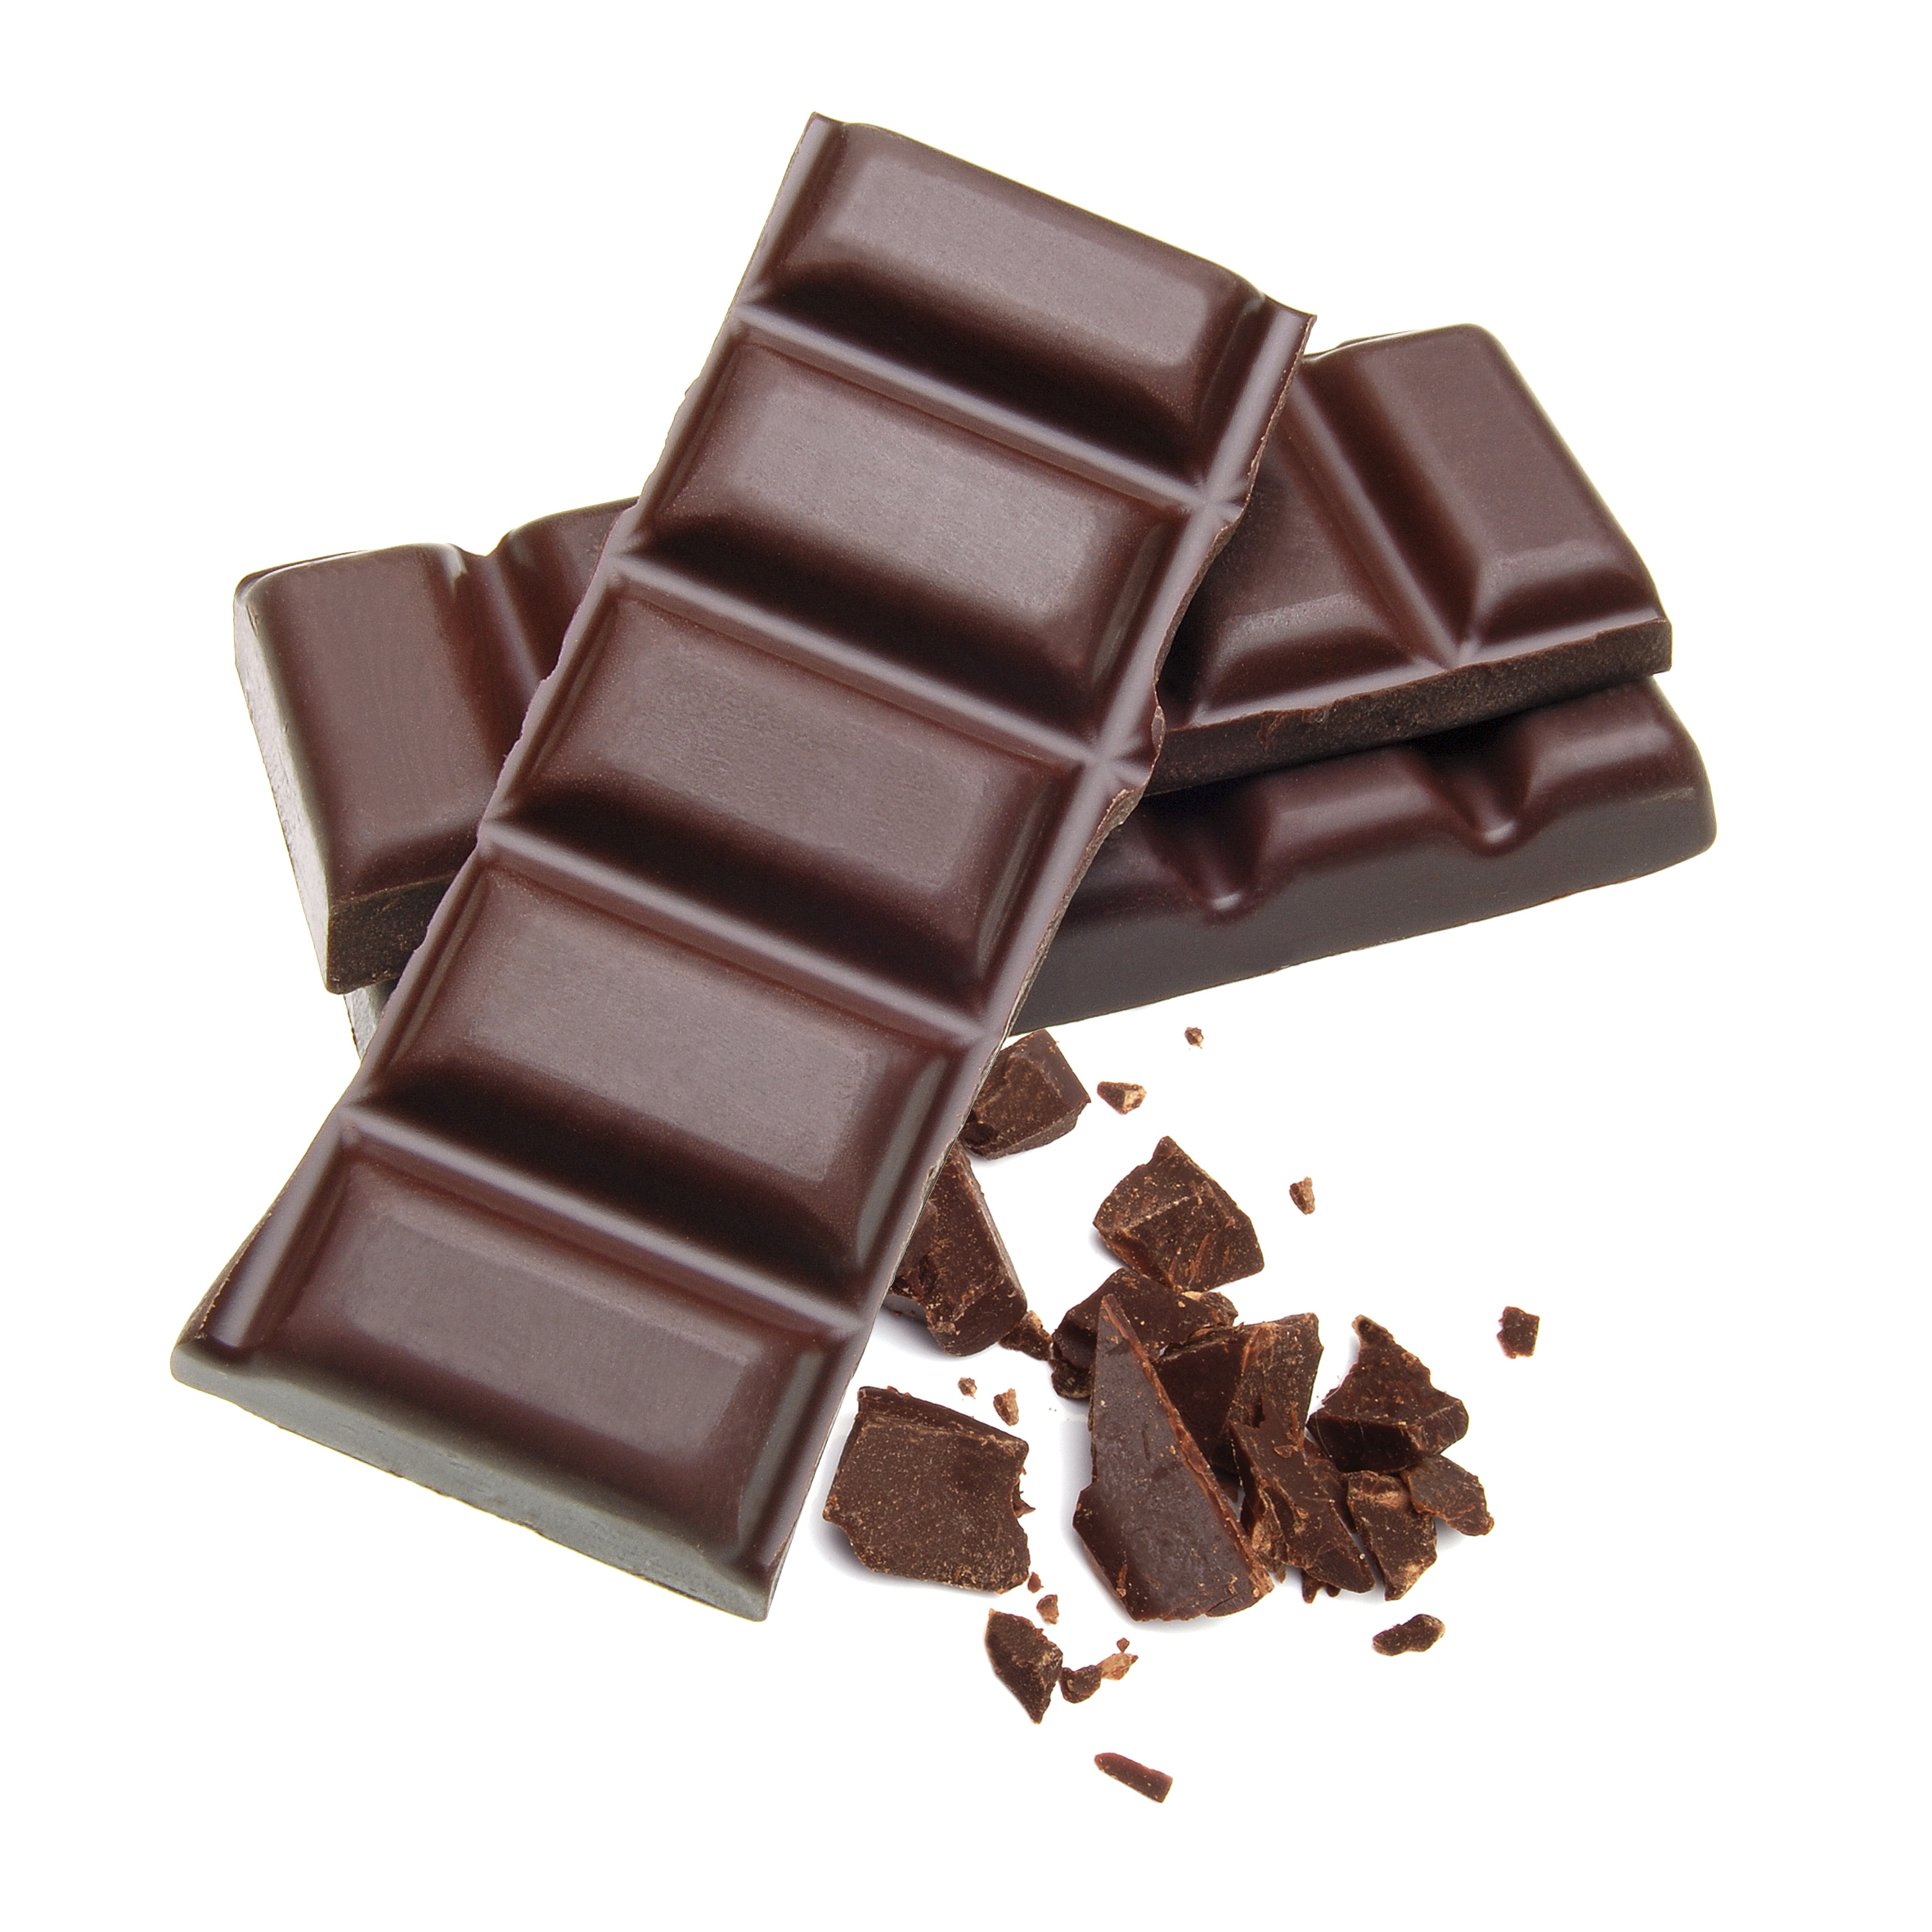 Tρεις αλήθειες που ίσως δεν γνωρίζουμε για την σοκολάτα